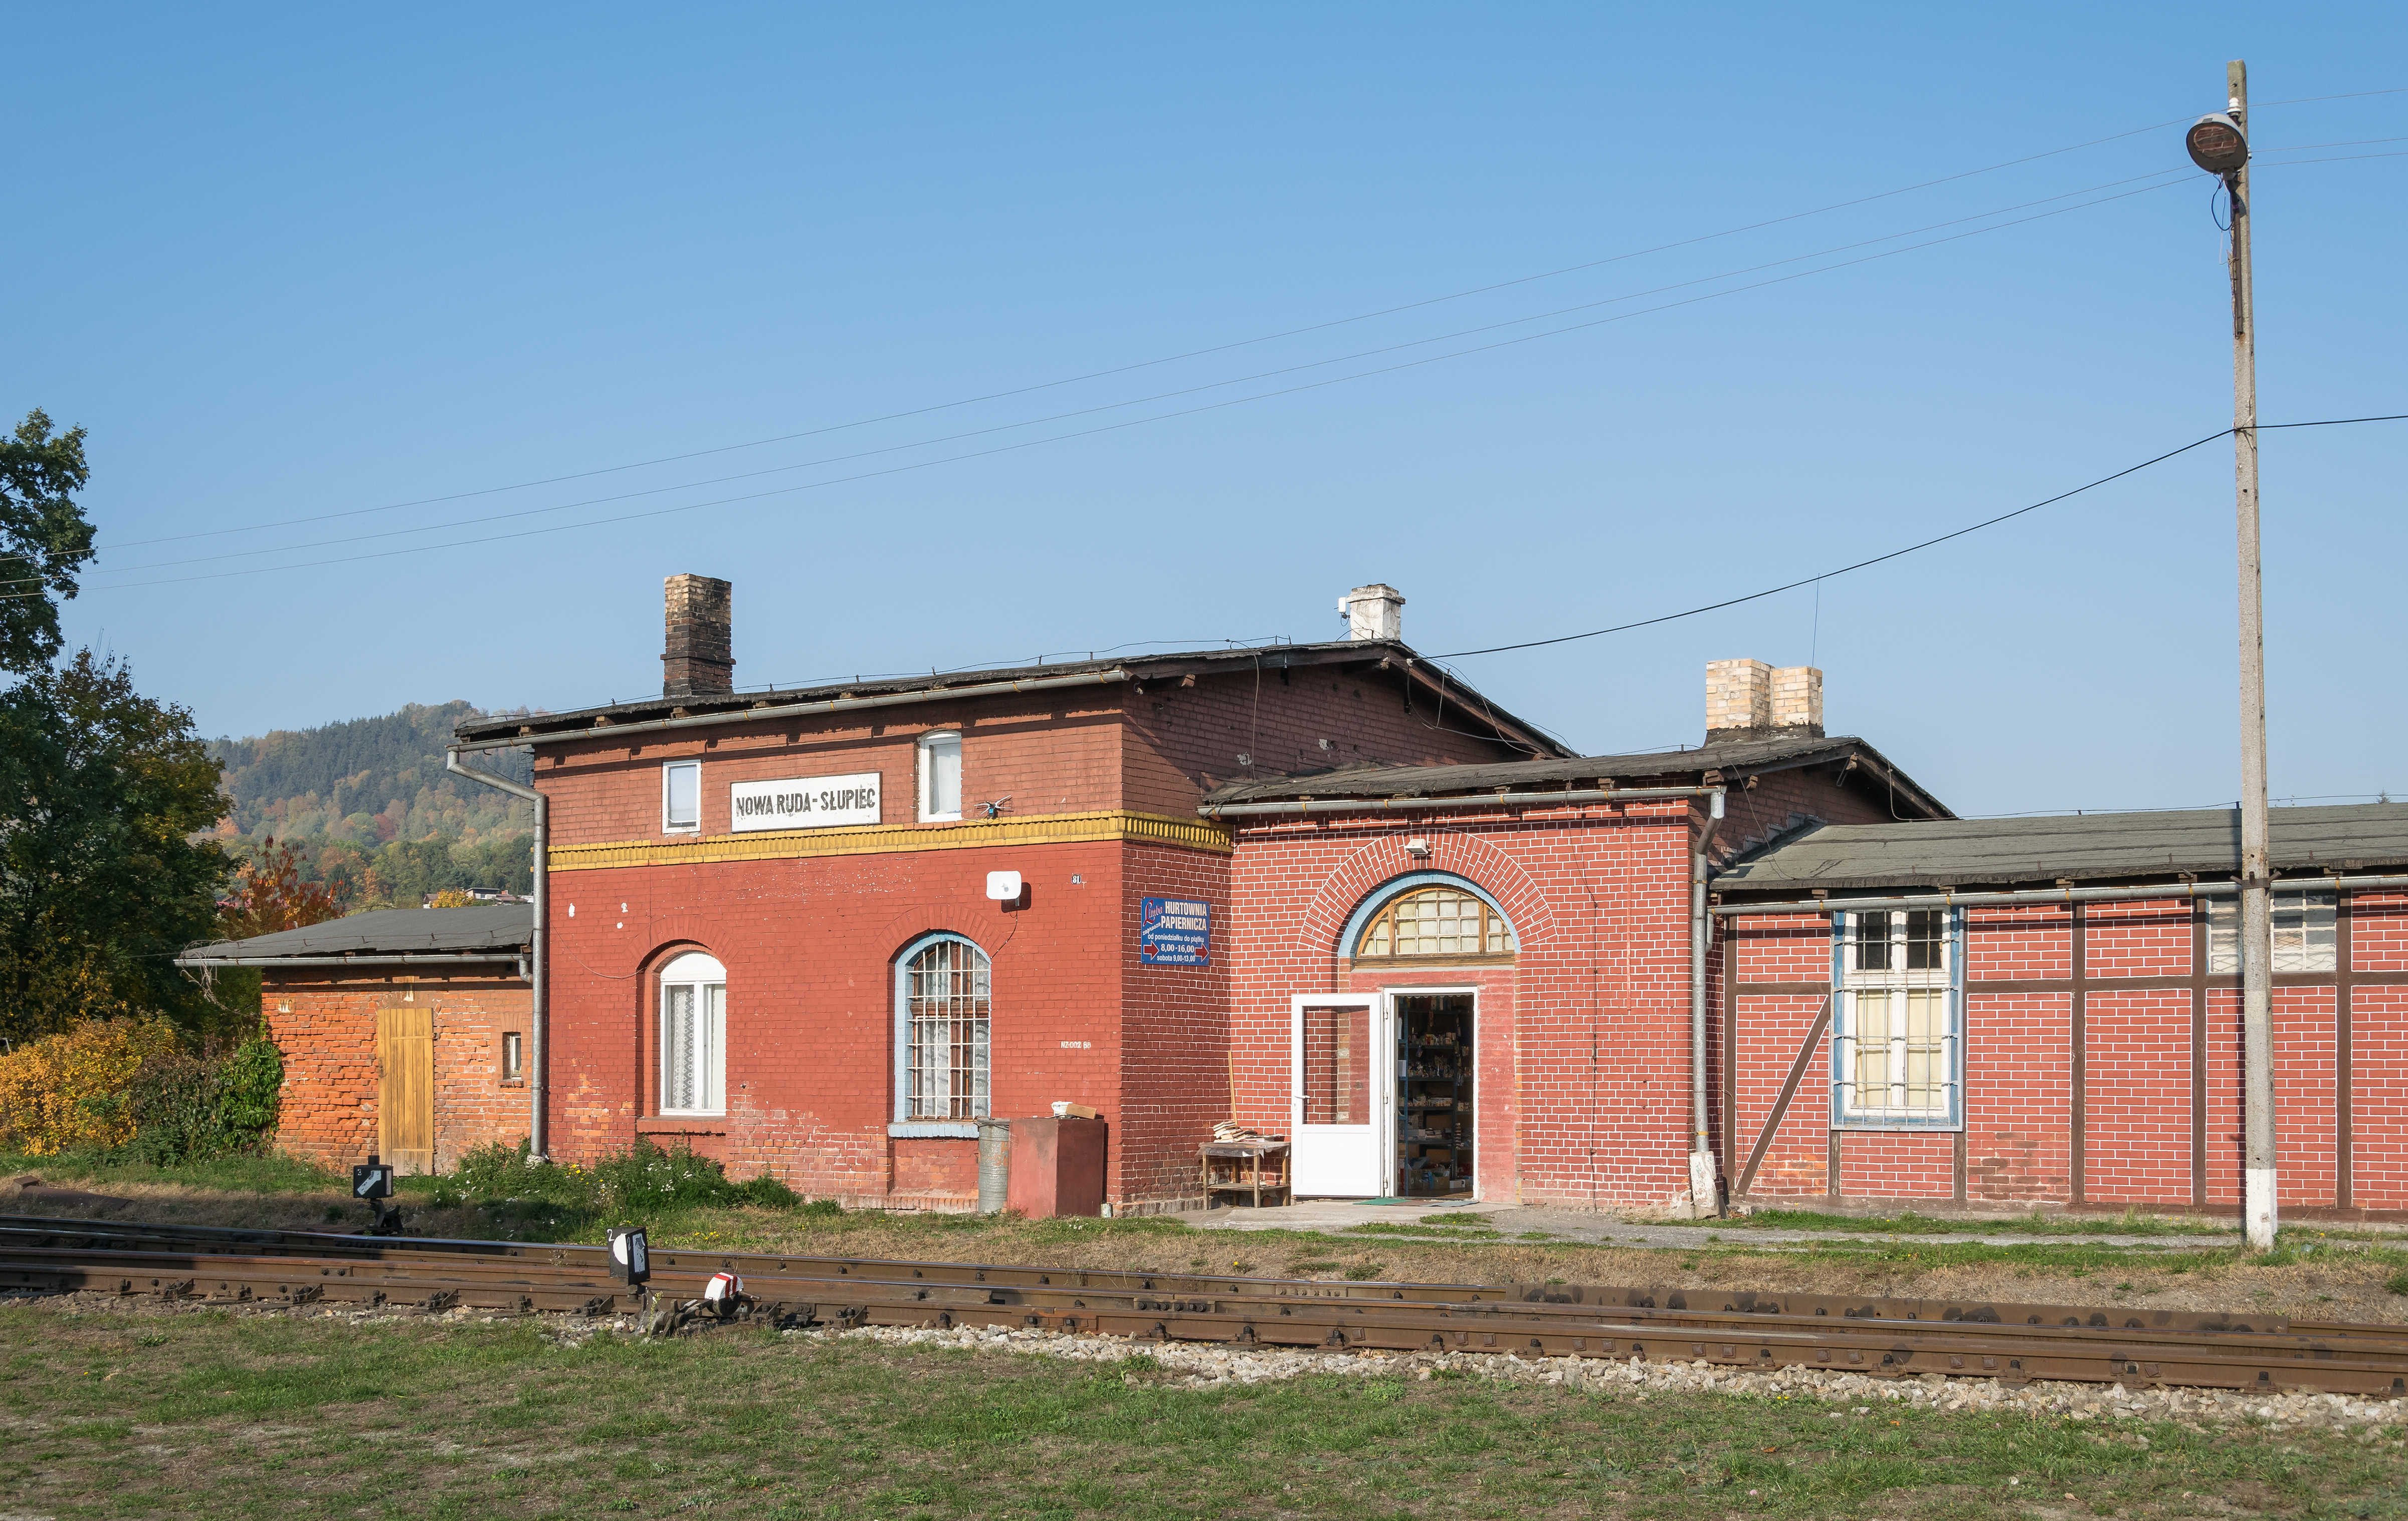 2018 Stacja kolejowa Nowa Ruda Słupiec 1